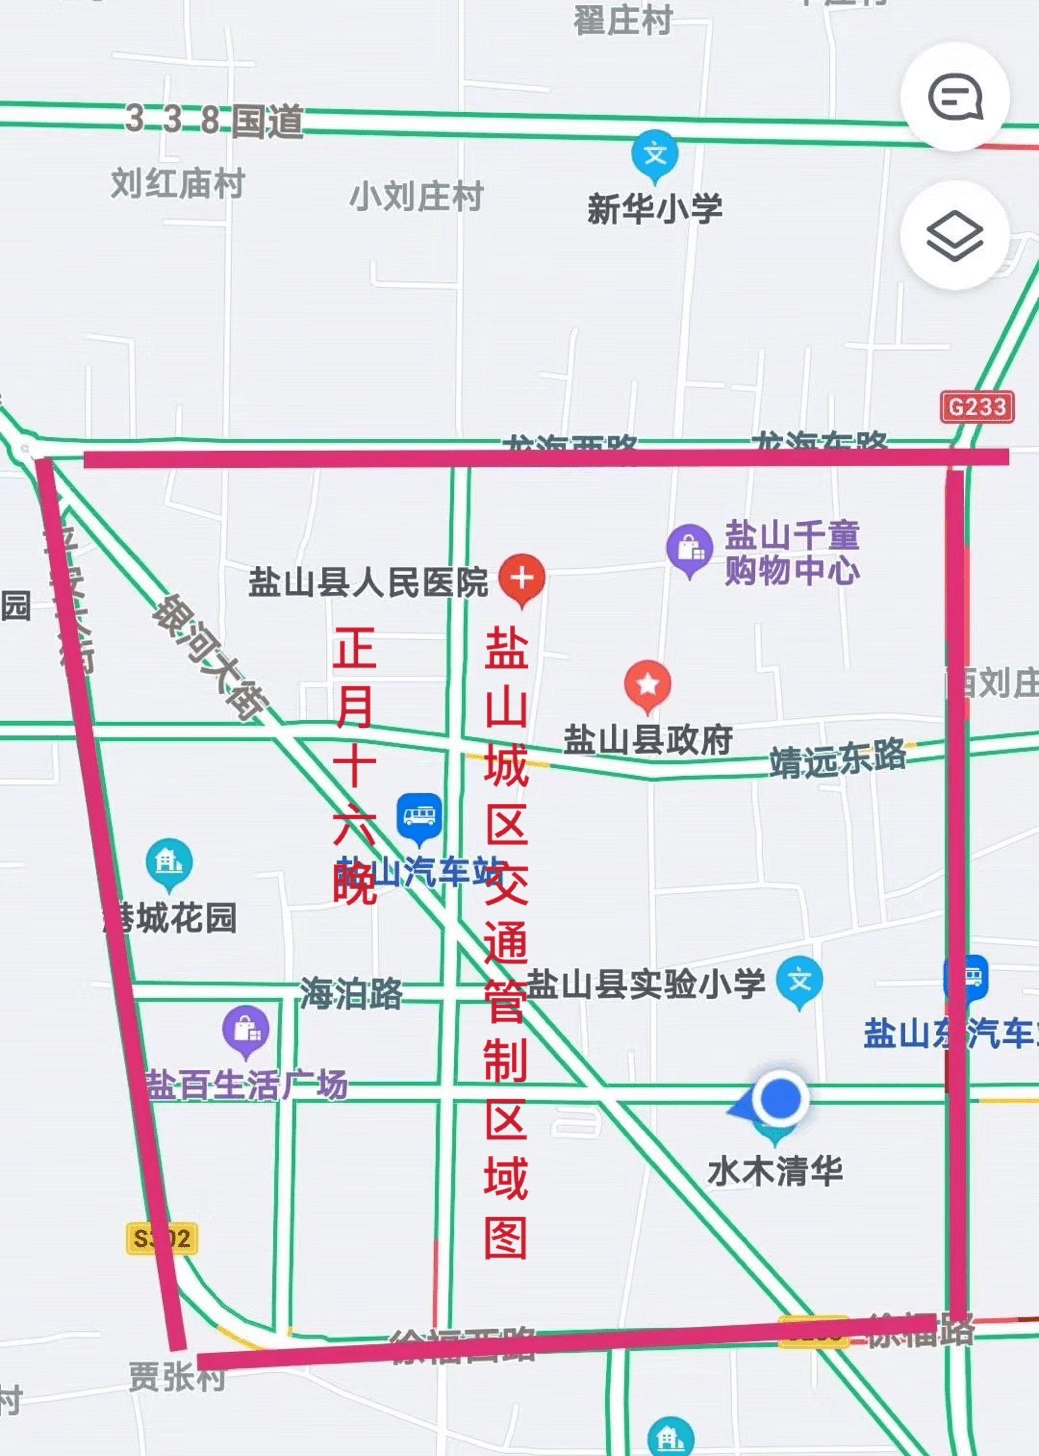 盐山县各村庄地图图片